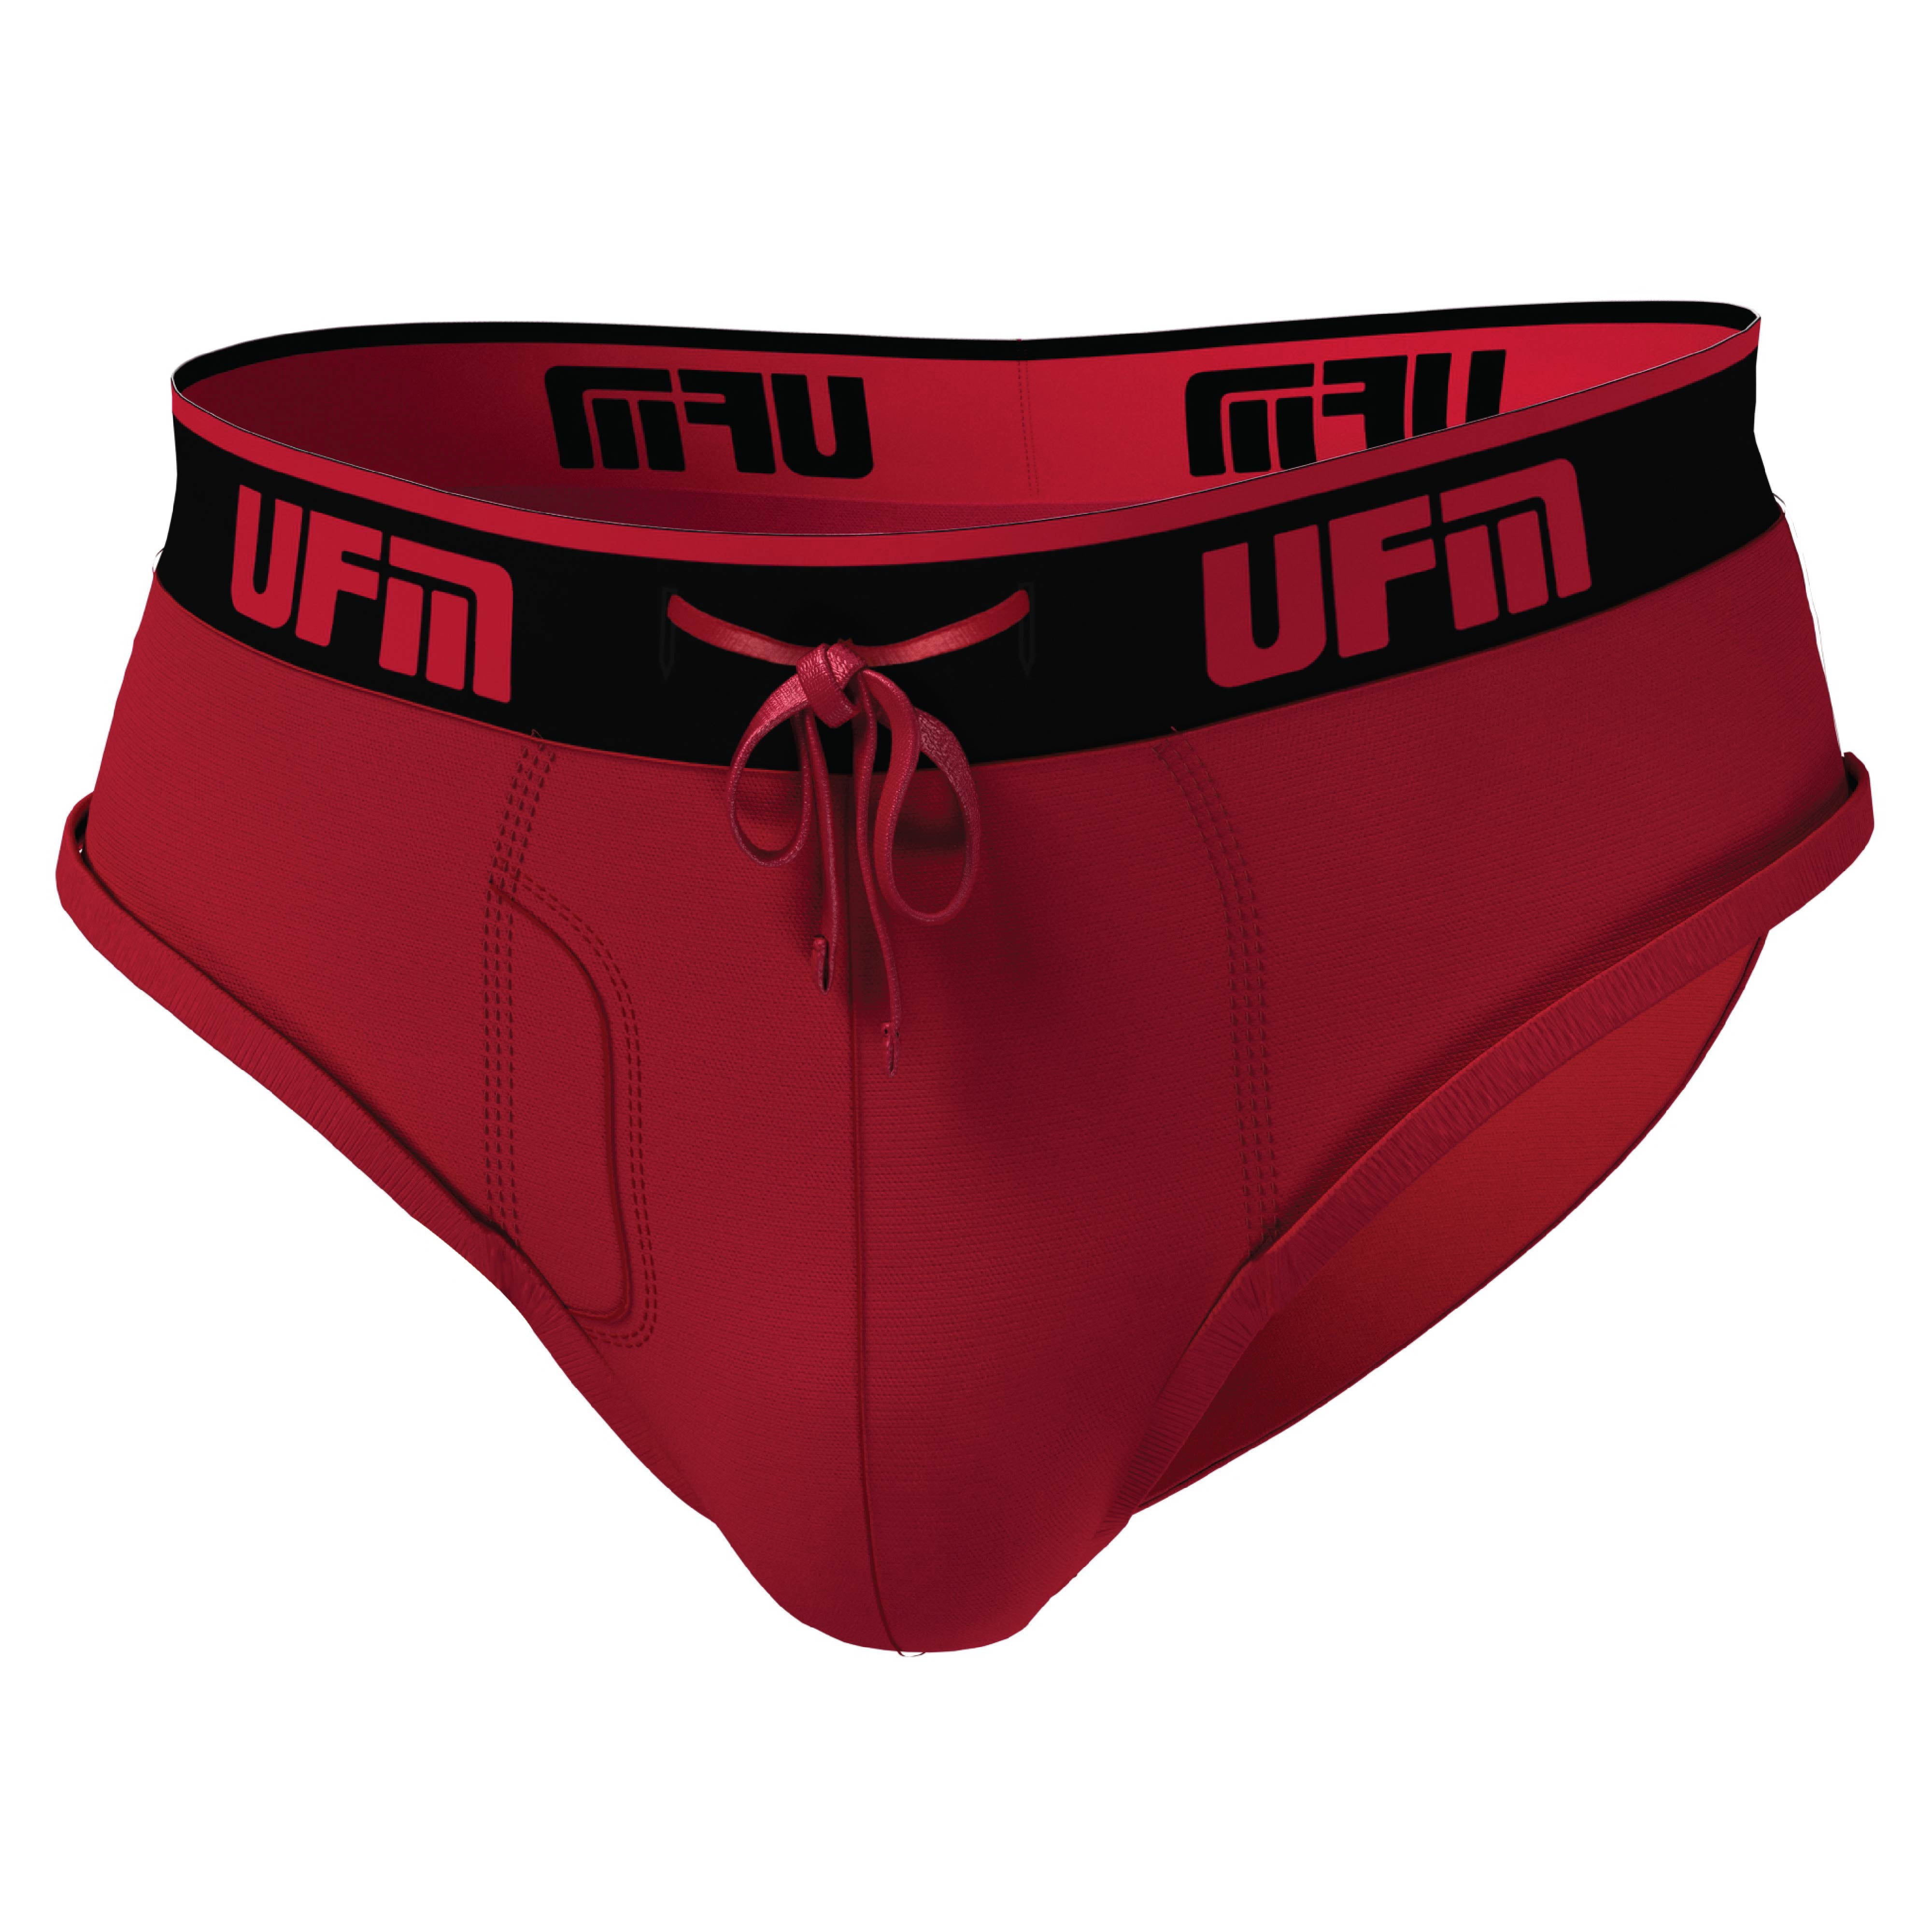 UFM Mens Underwear, Polyester-Spandex Mens Briefs, Regular and Adjustable  Support Pouch Men Underwear, 48-50 Waist, Red